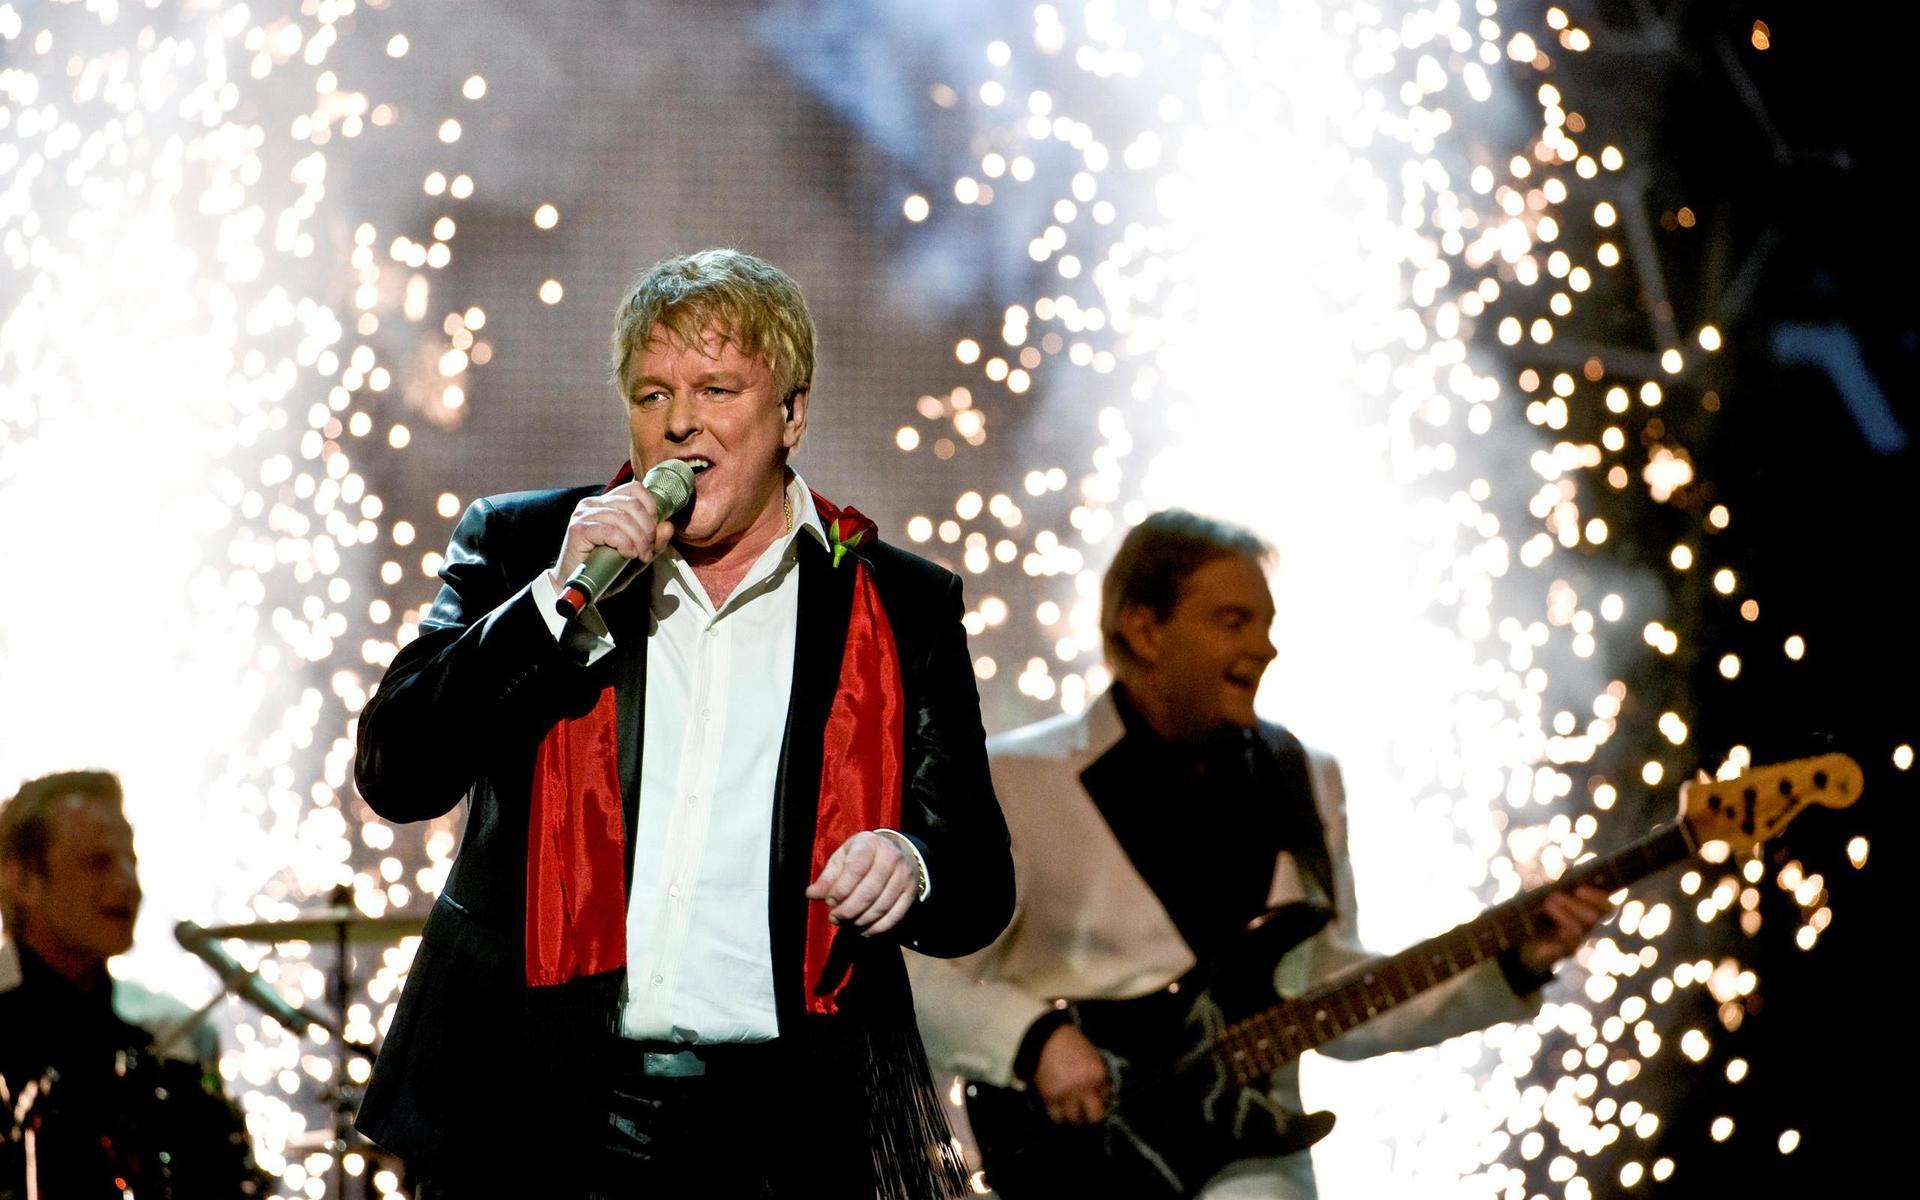 2009 tävlade Thorleifs i Melodifestivalen med låten ”Sweet kissin’ in the moonlight”.